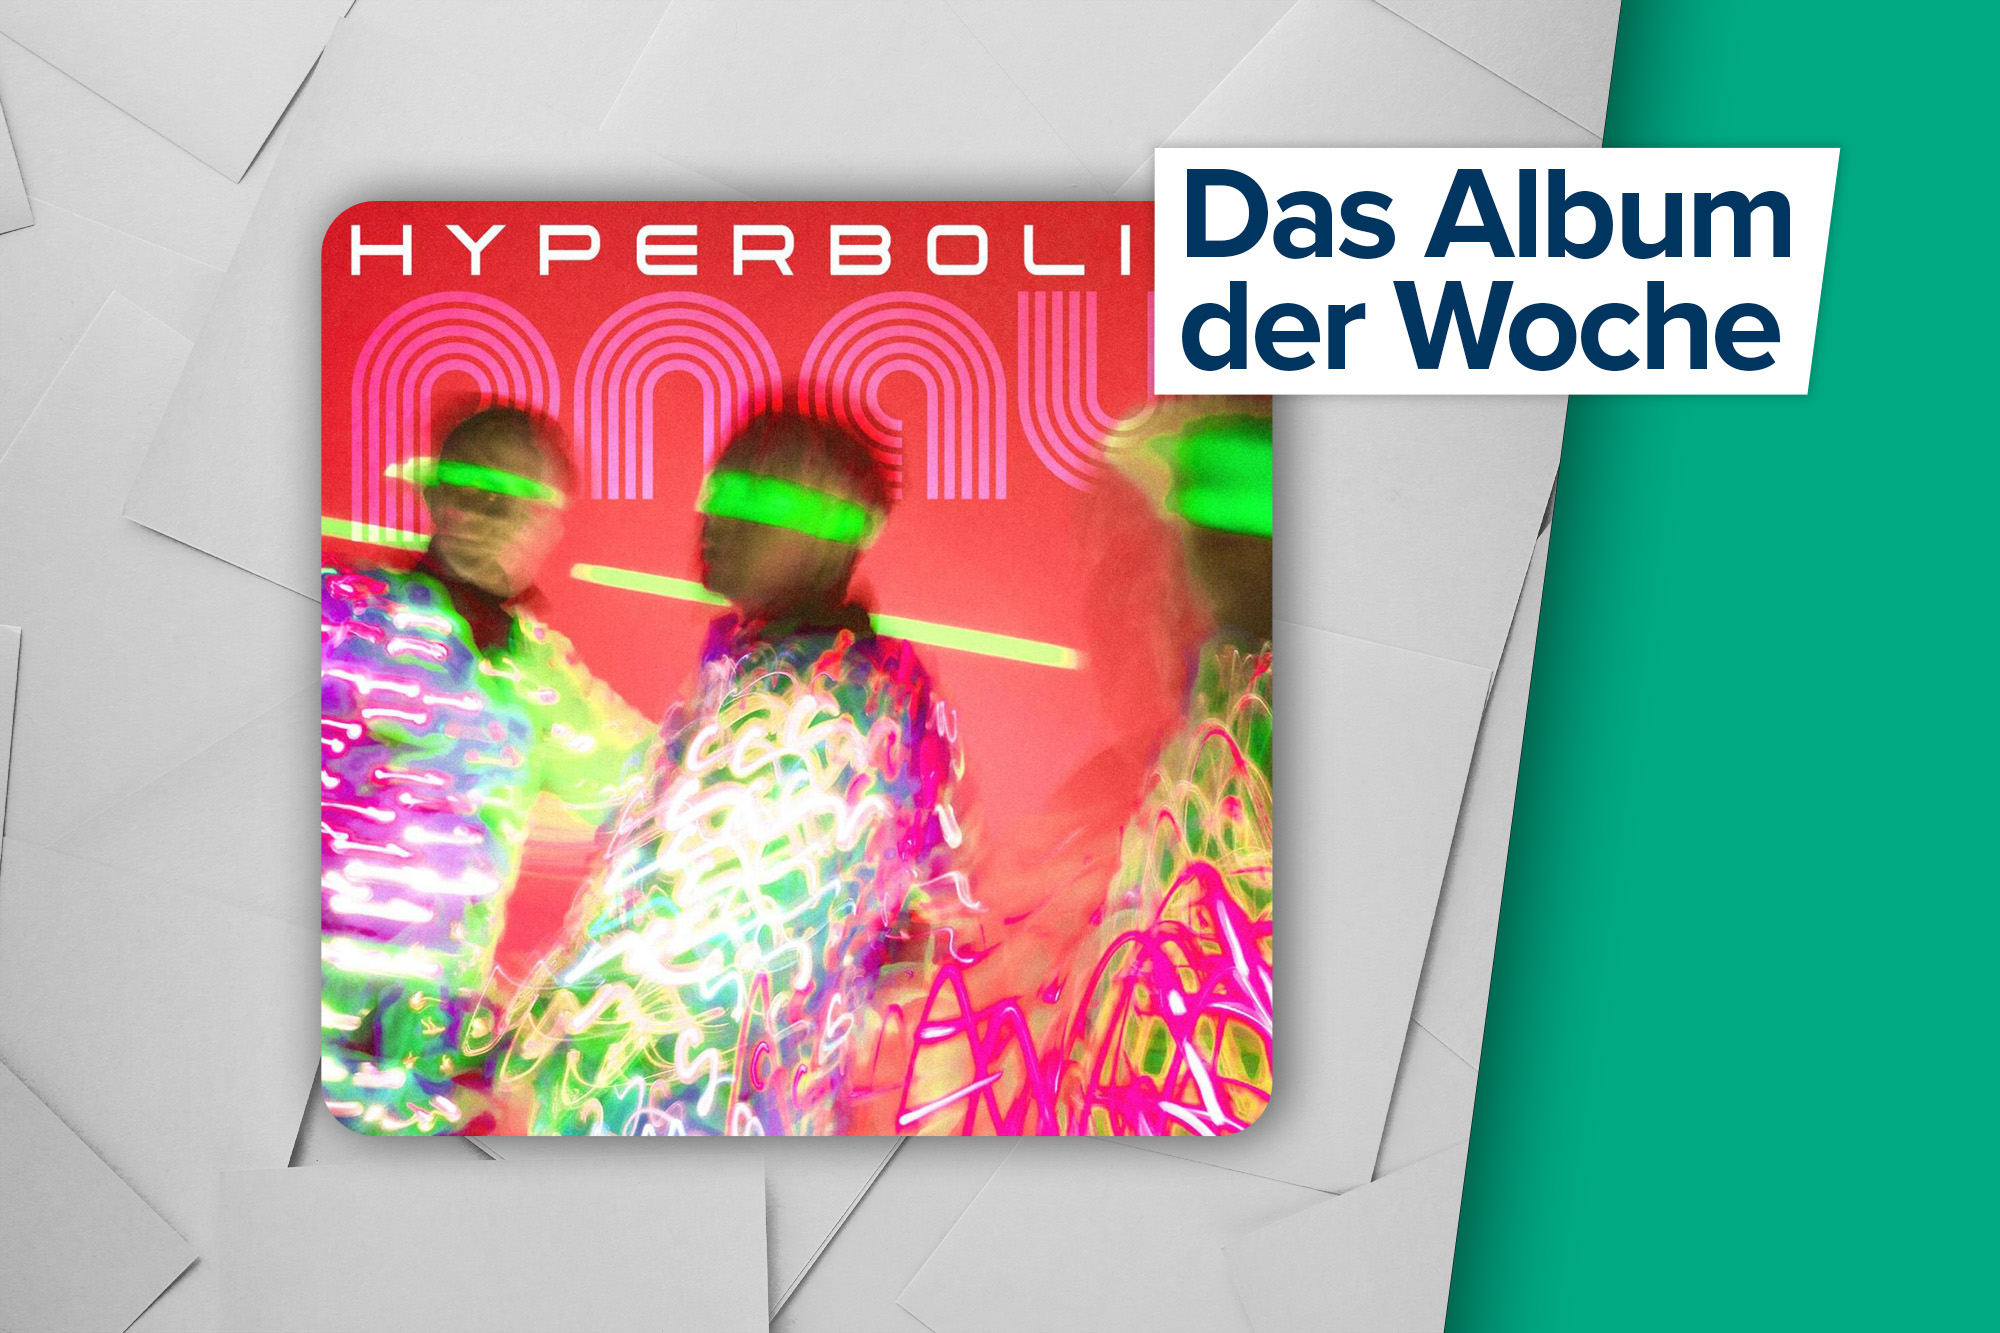 Das Album der Woche: "Hyperbolic" von Pnau